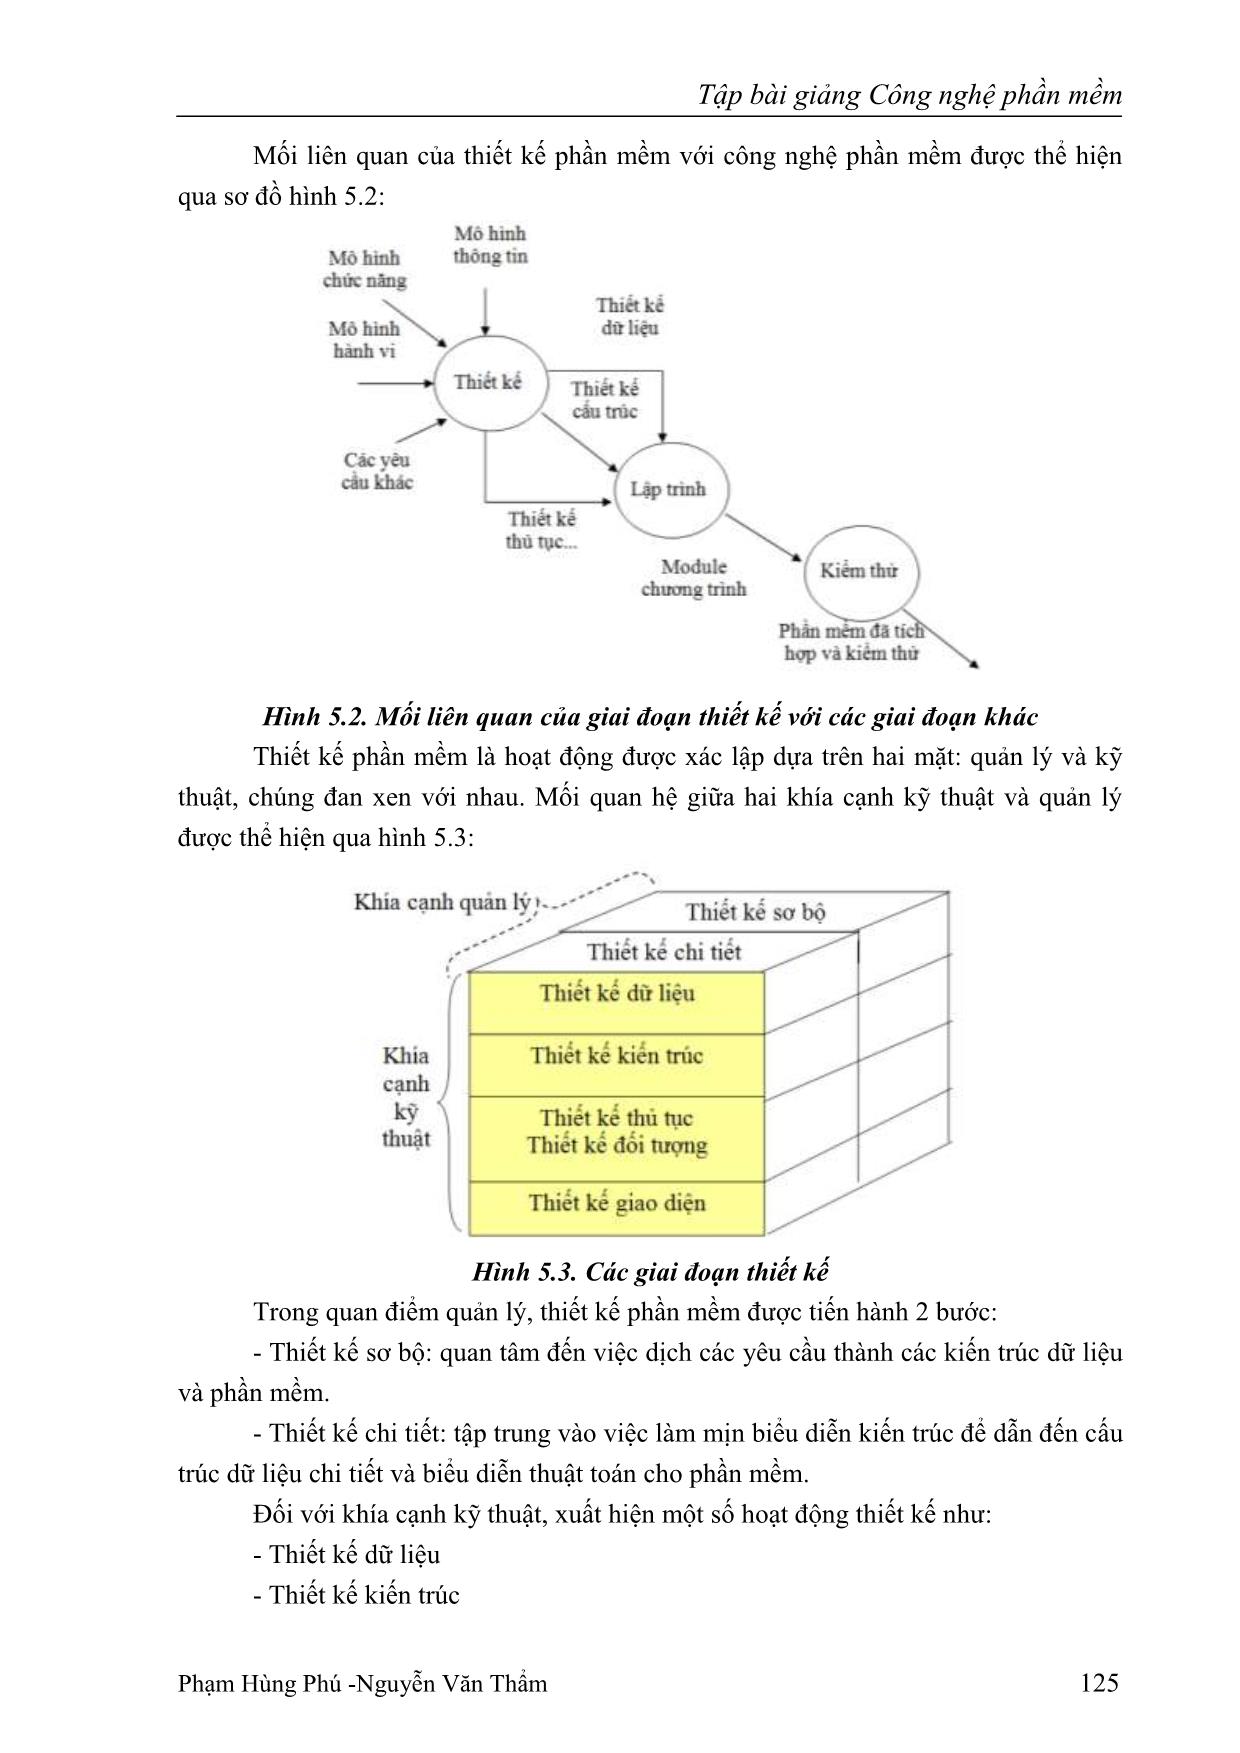 Giáo trình Công nghệ phần mềm (Phần 2) trang 2